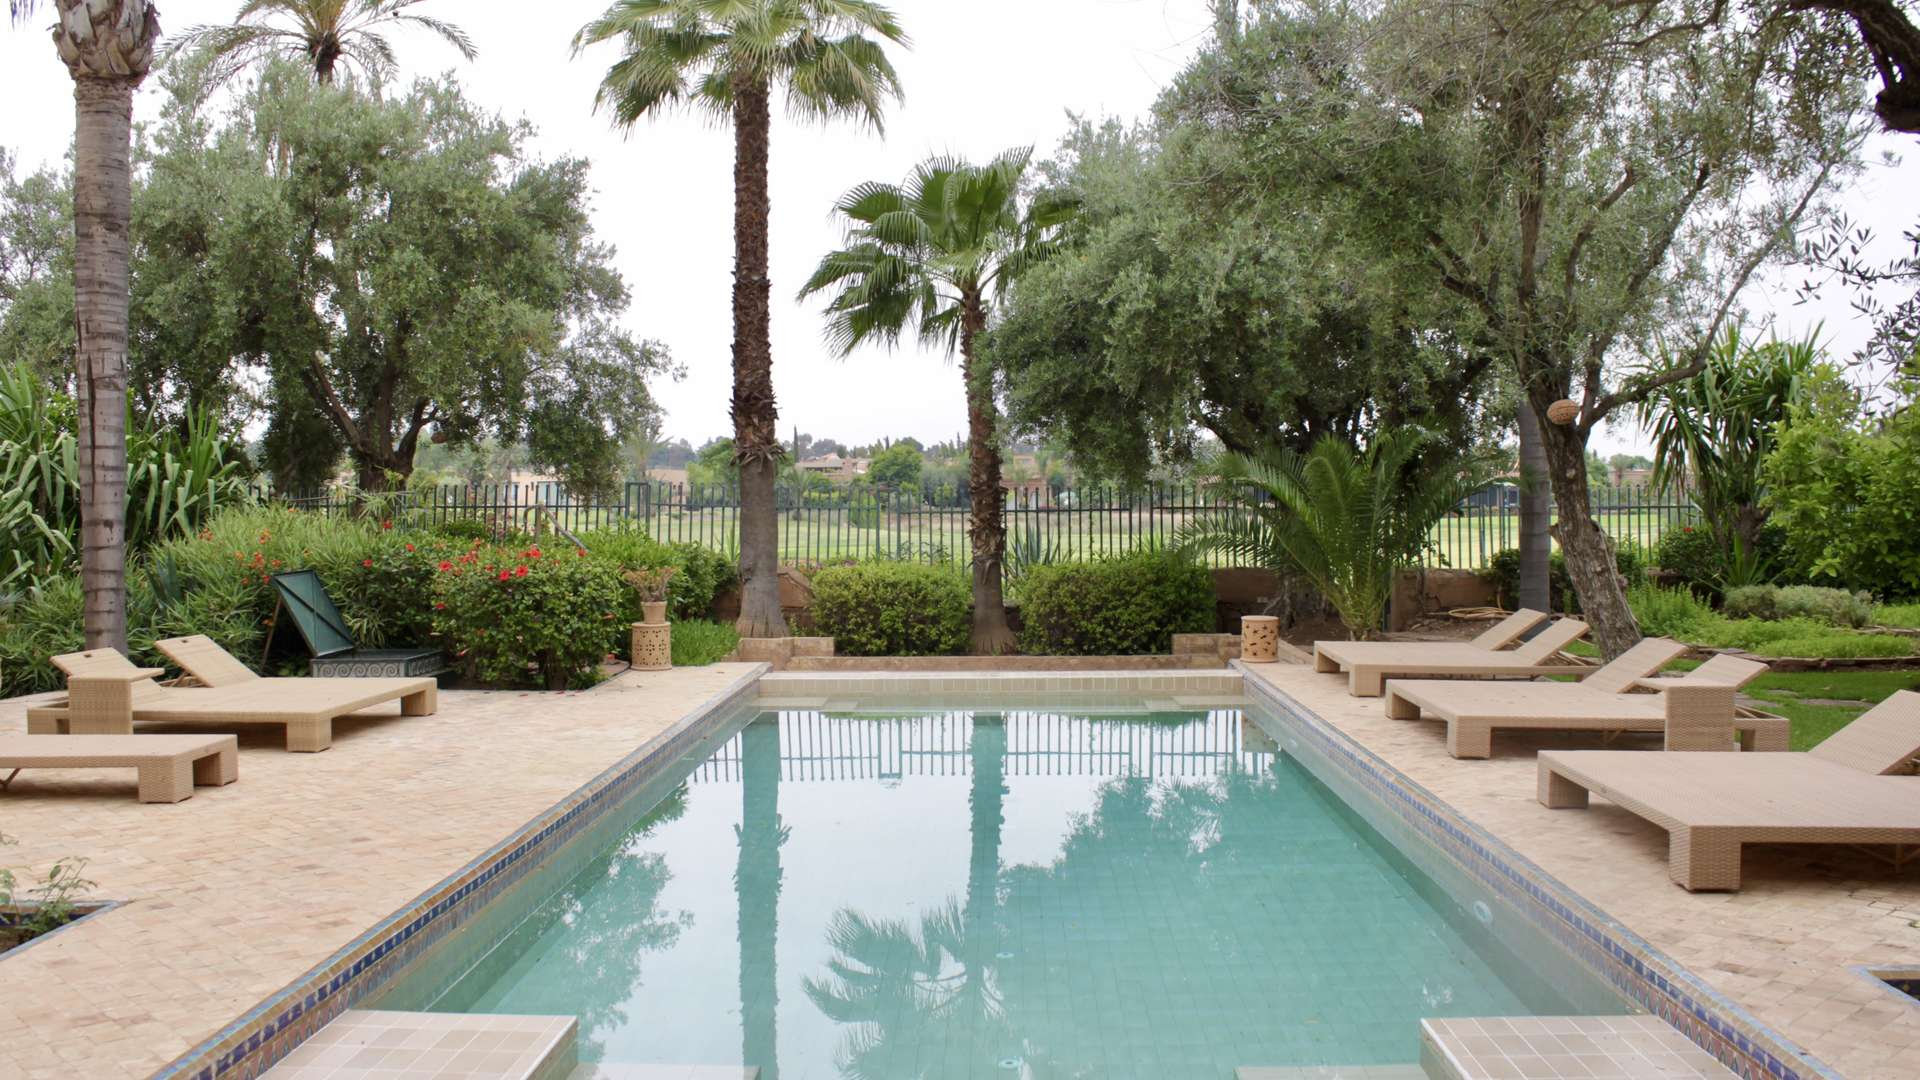 Location de vacances,Villa,Sublime villa de charme de 4 chambres au syle arabo-andalous front de golf à Marrakech,Marrakech,Amelkis Golf Resort